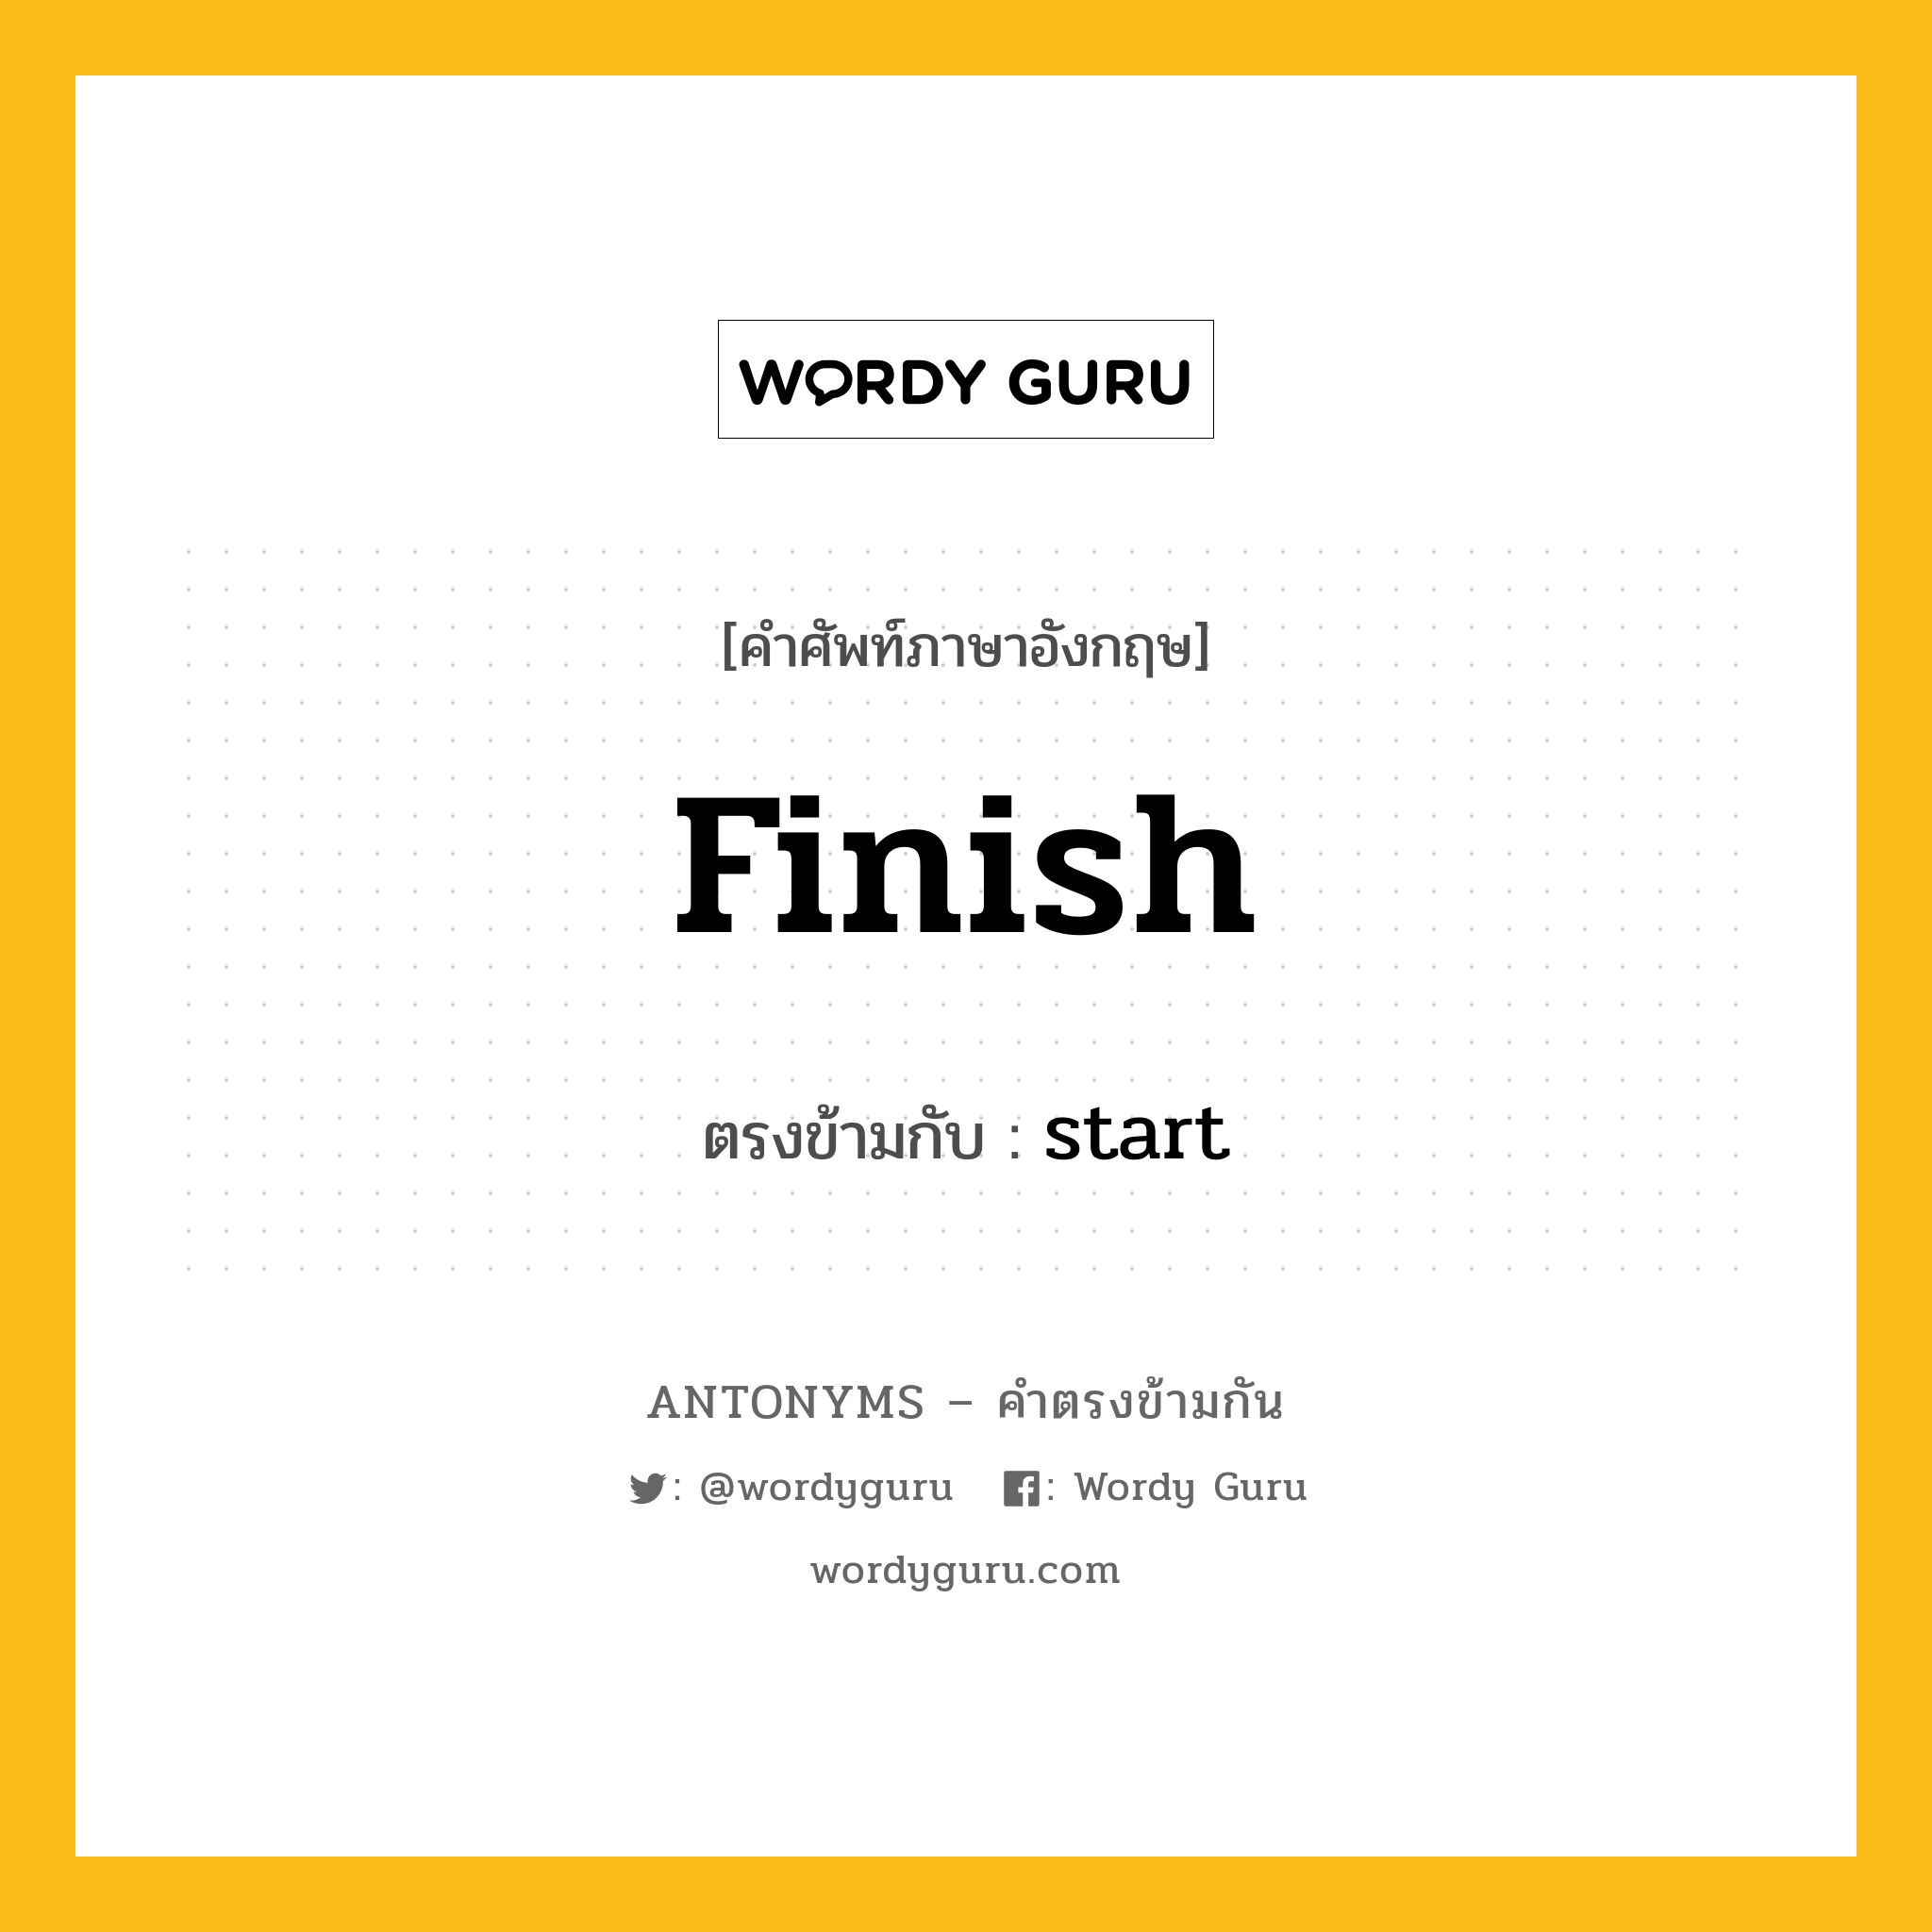 finish เป็นคำตรงข้ามกับคำไหนบ้าง?, คำศัพท์ภาษาอังกฤษ finish ตรงข้ามกับ start หมวด start